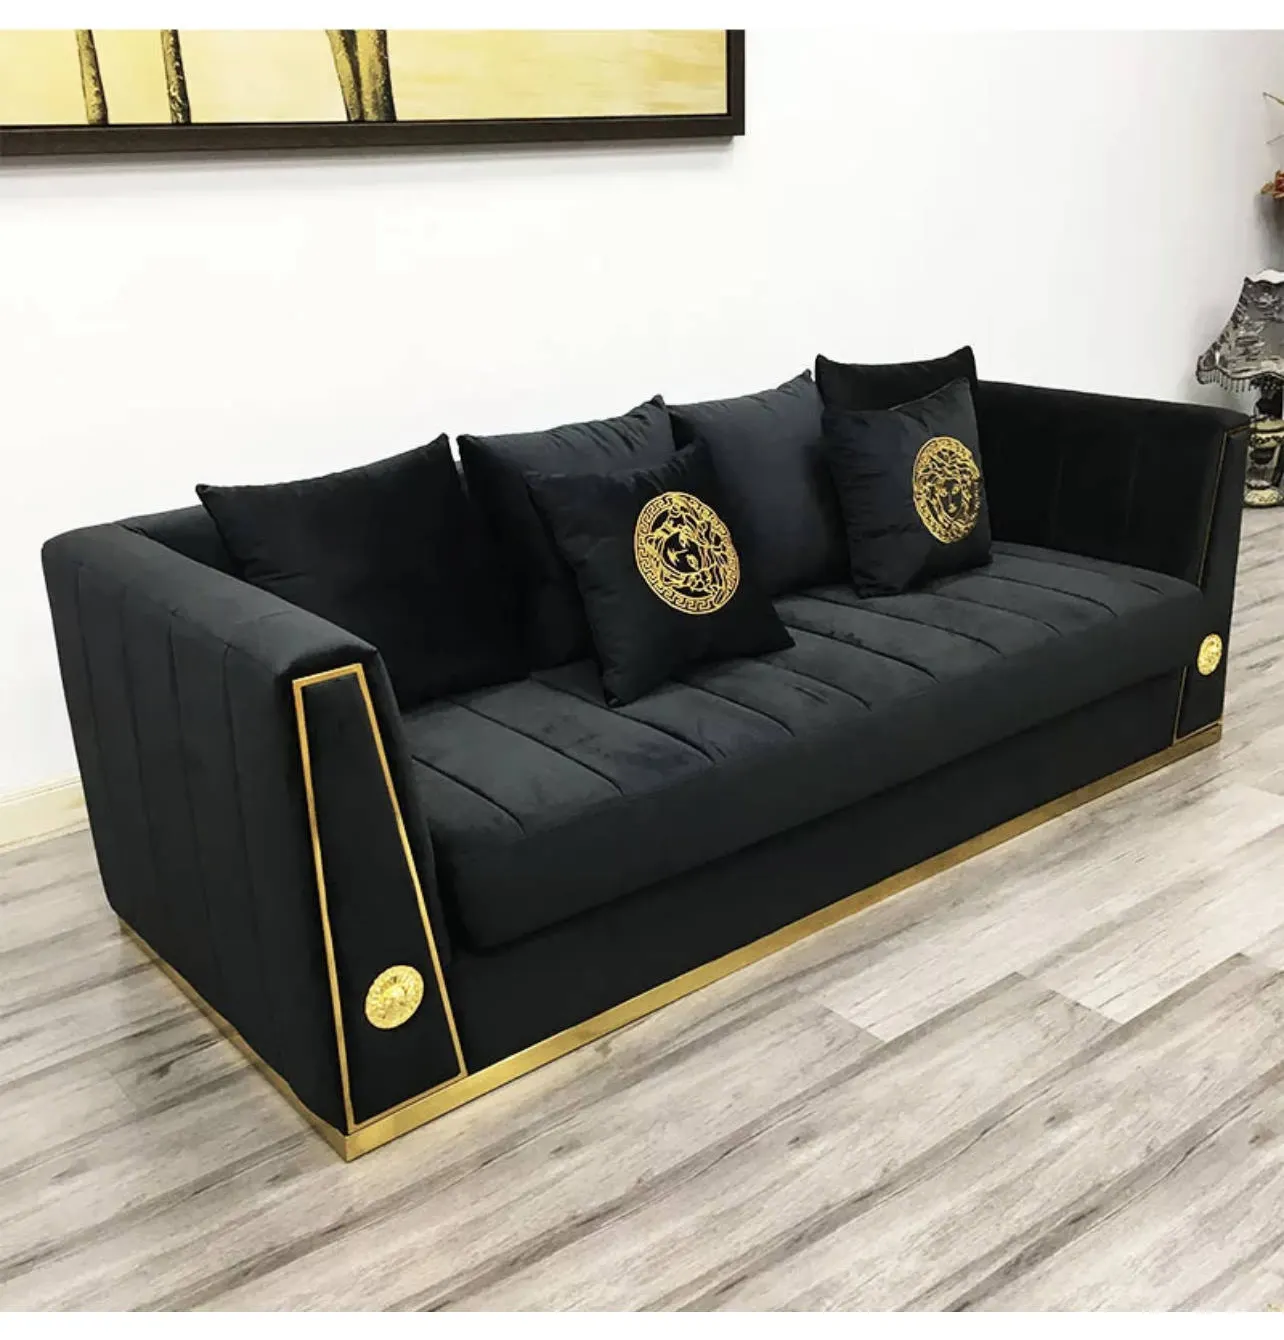 Edelstahl Möbel Hardware Teile Golden Luxus Armlehne Rahmen für Sofa dekorativ